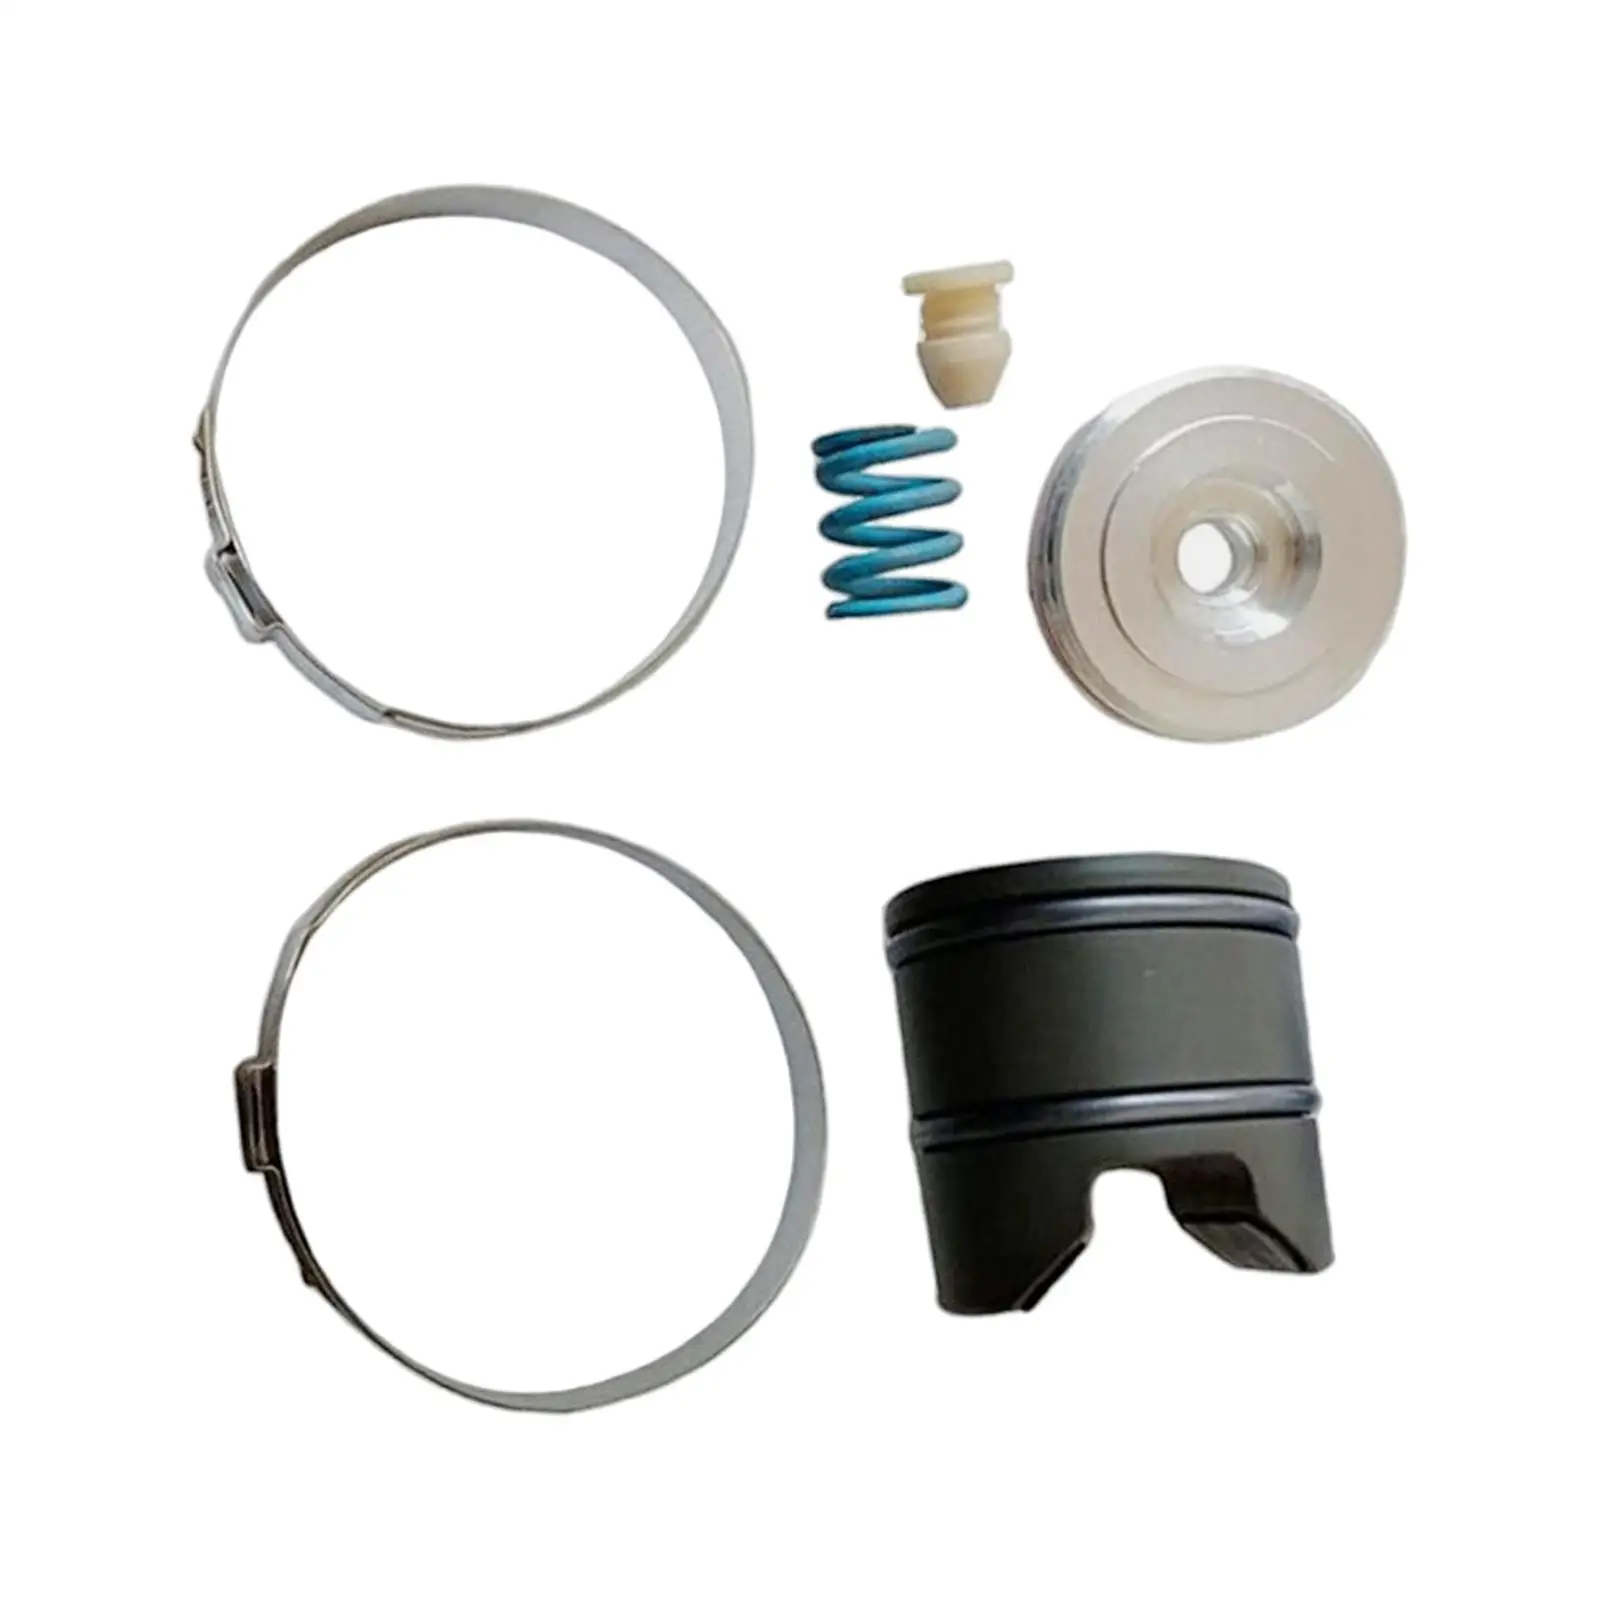 Steering Rack Repair Tool Accessories Easy to Install Durable for BMW F Series 1 2 3 4 x1 x3 x4 F25 F26 F22 F23 F31 F34